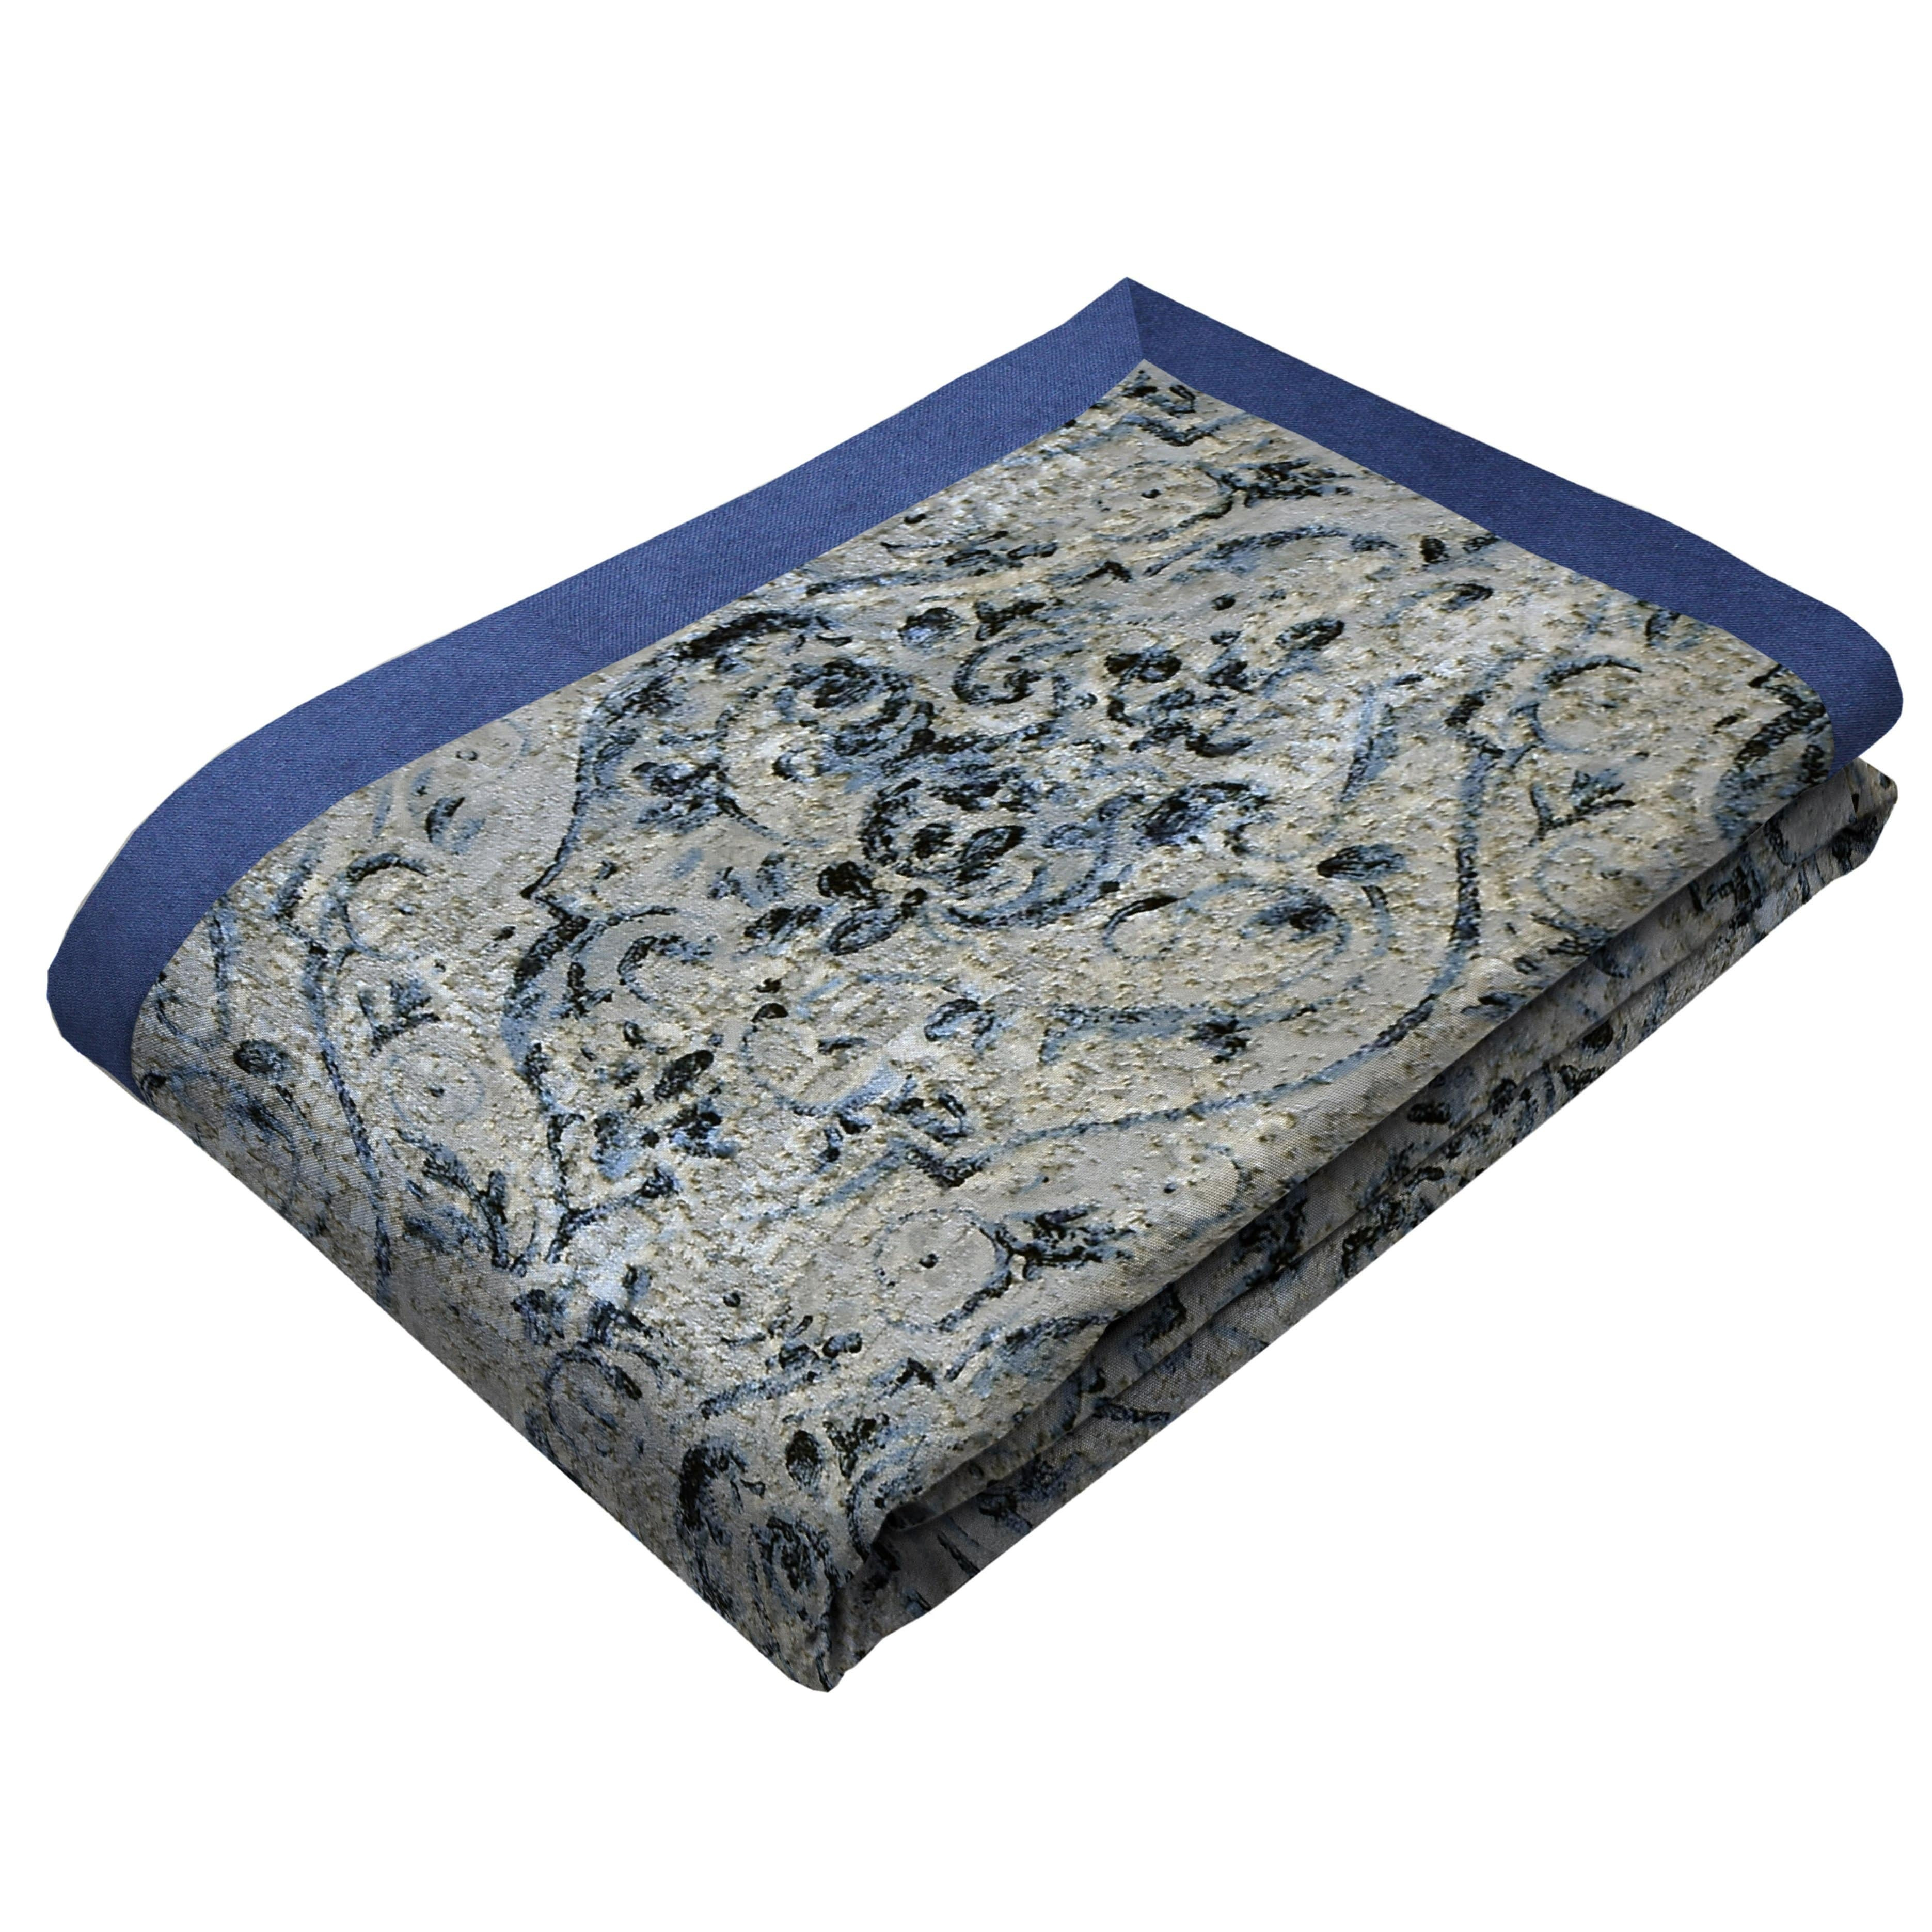 Renaissance Navy Blue Printed Velvet Throws & Runners, Bed Runner (50cm x 240cm)